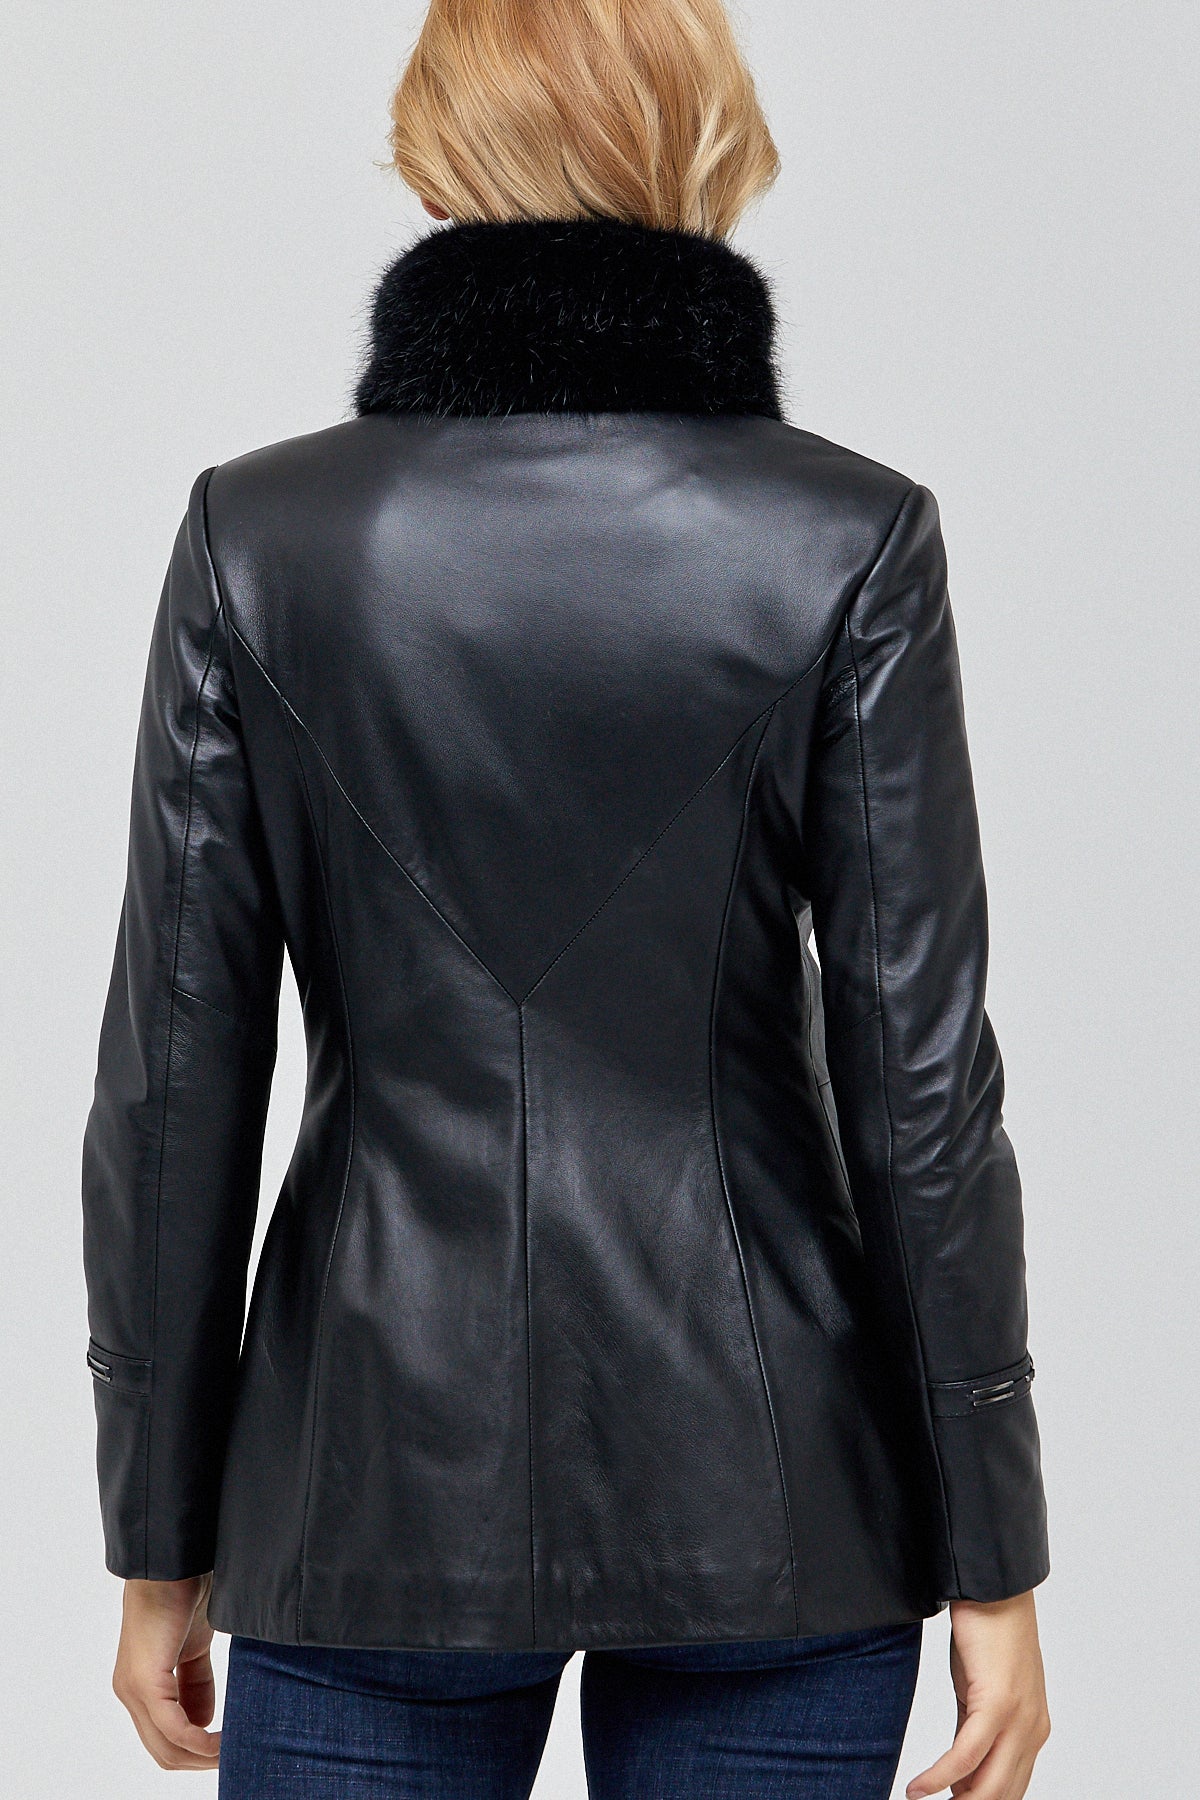 Byblos Kadın Deri Ceket